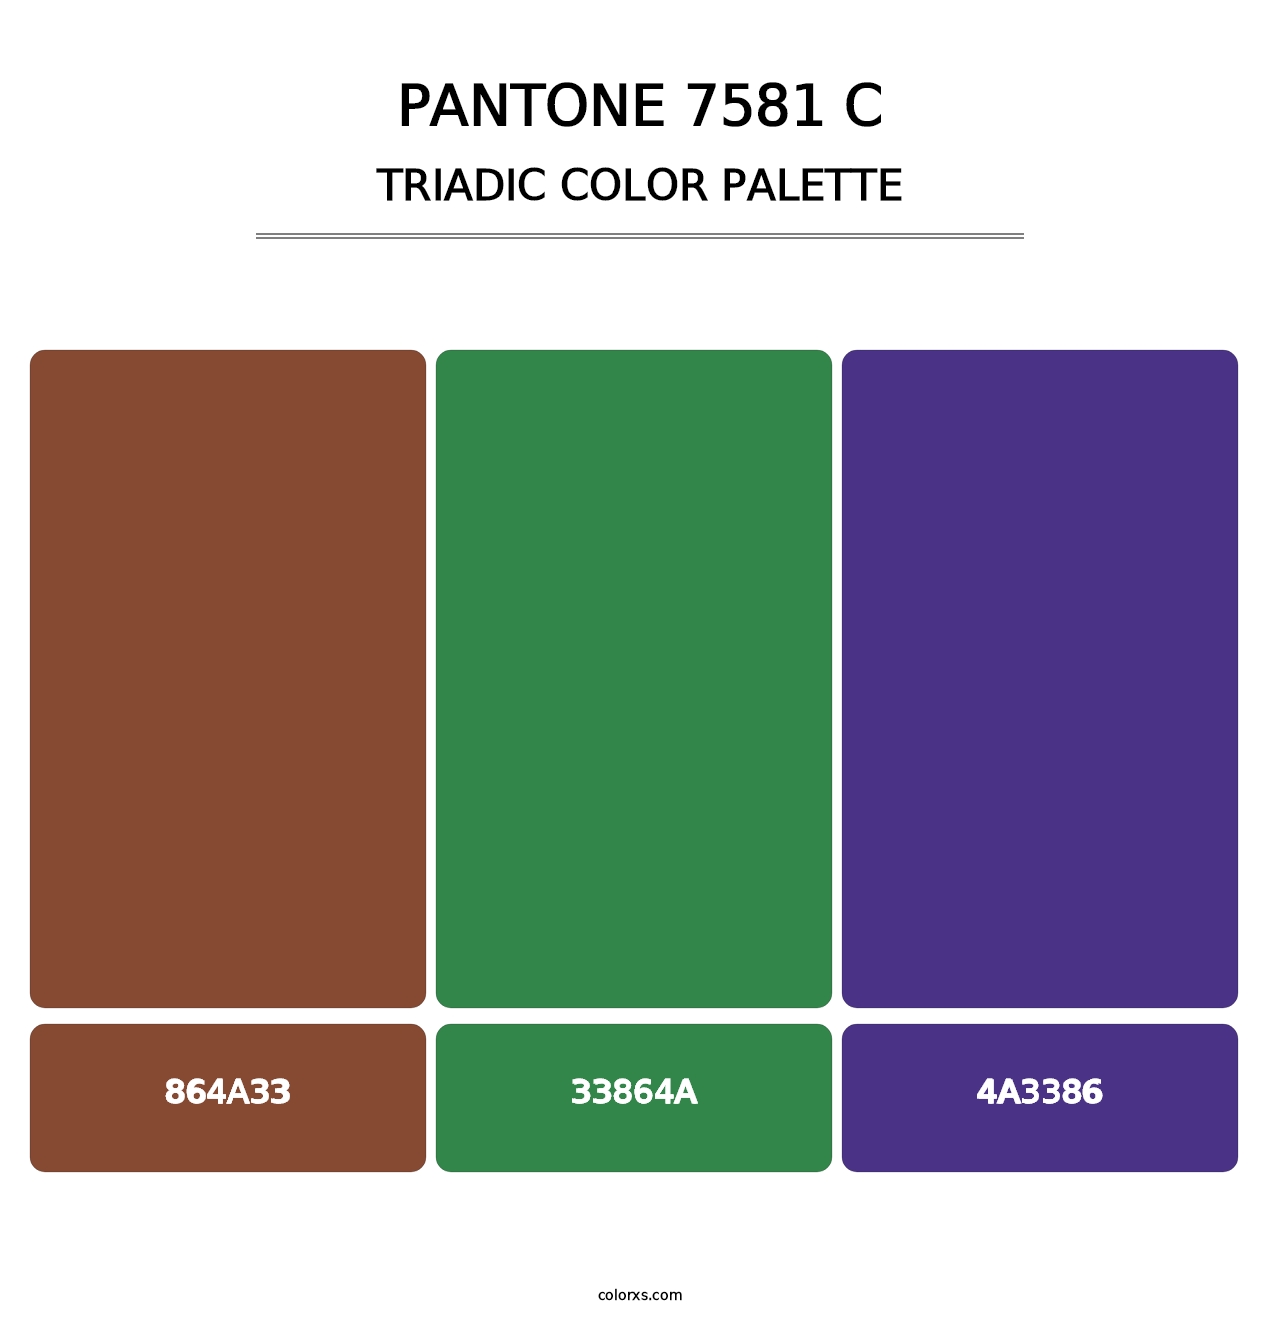 PANTONE 7581 C - Triadic Color Palette